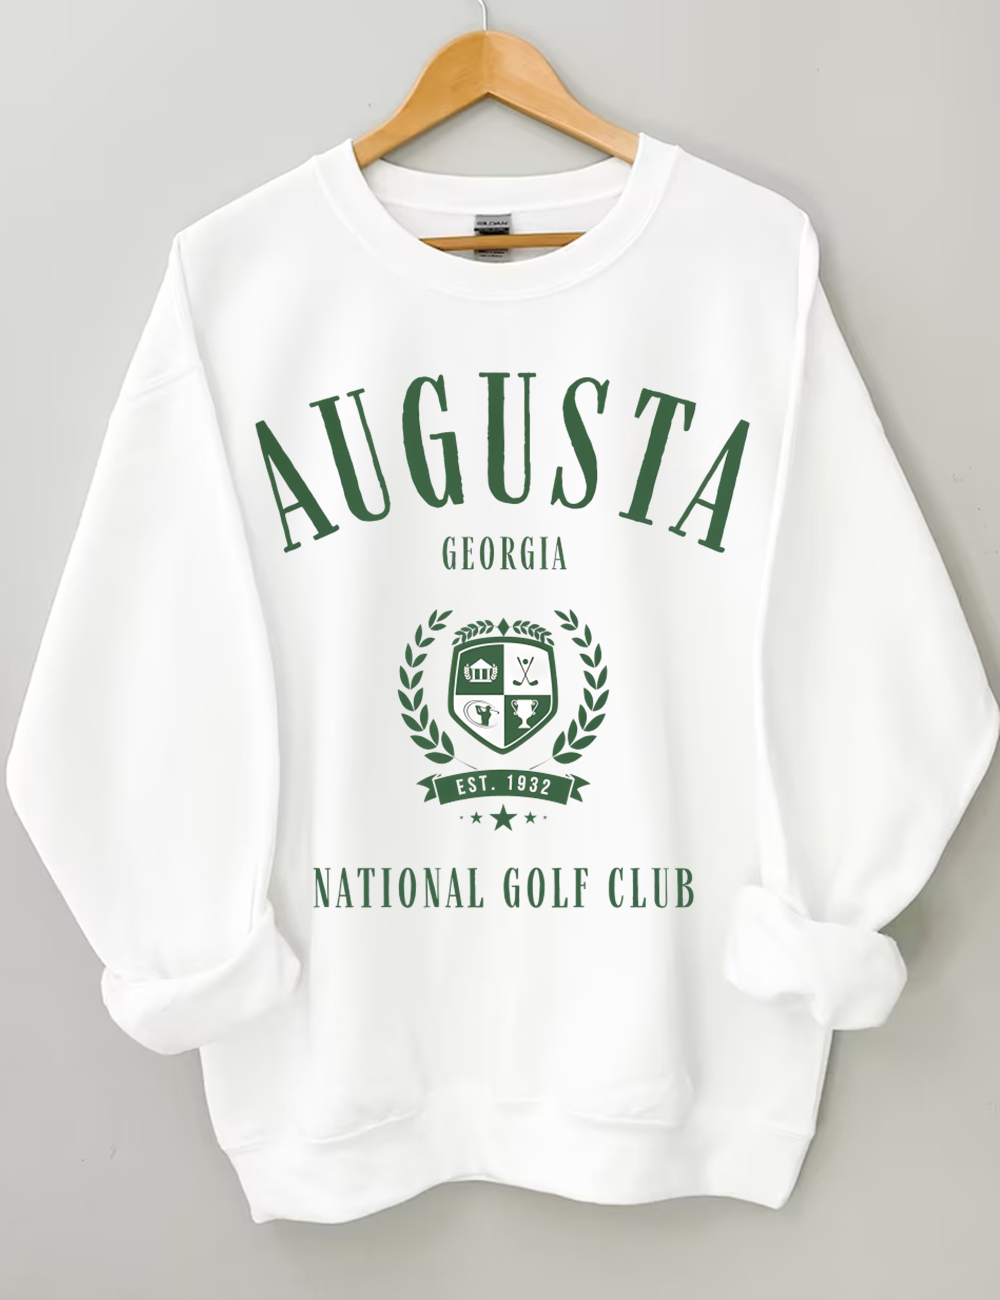 Augusta Georgia Golf Club Sweatshirt